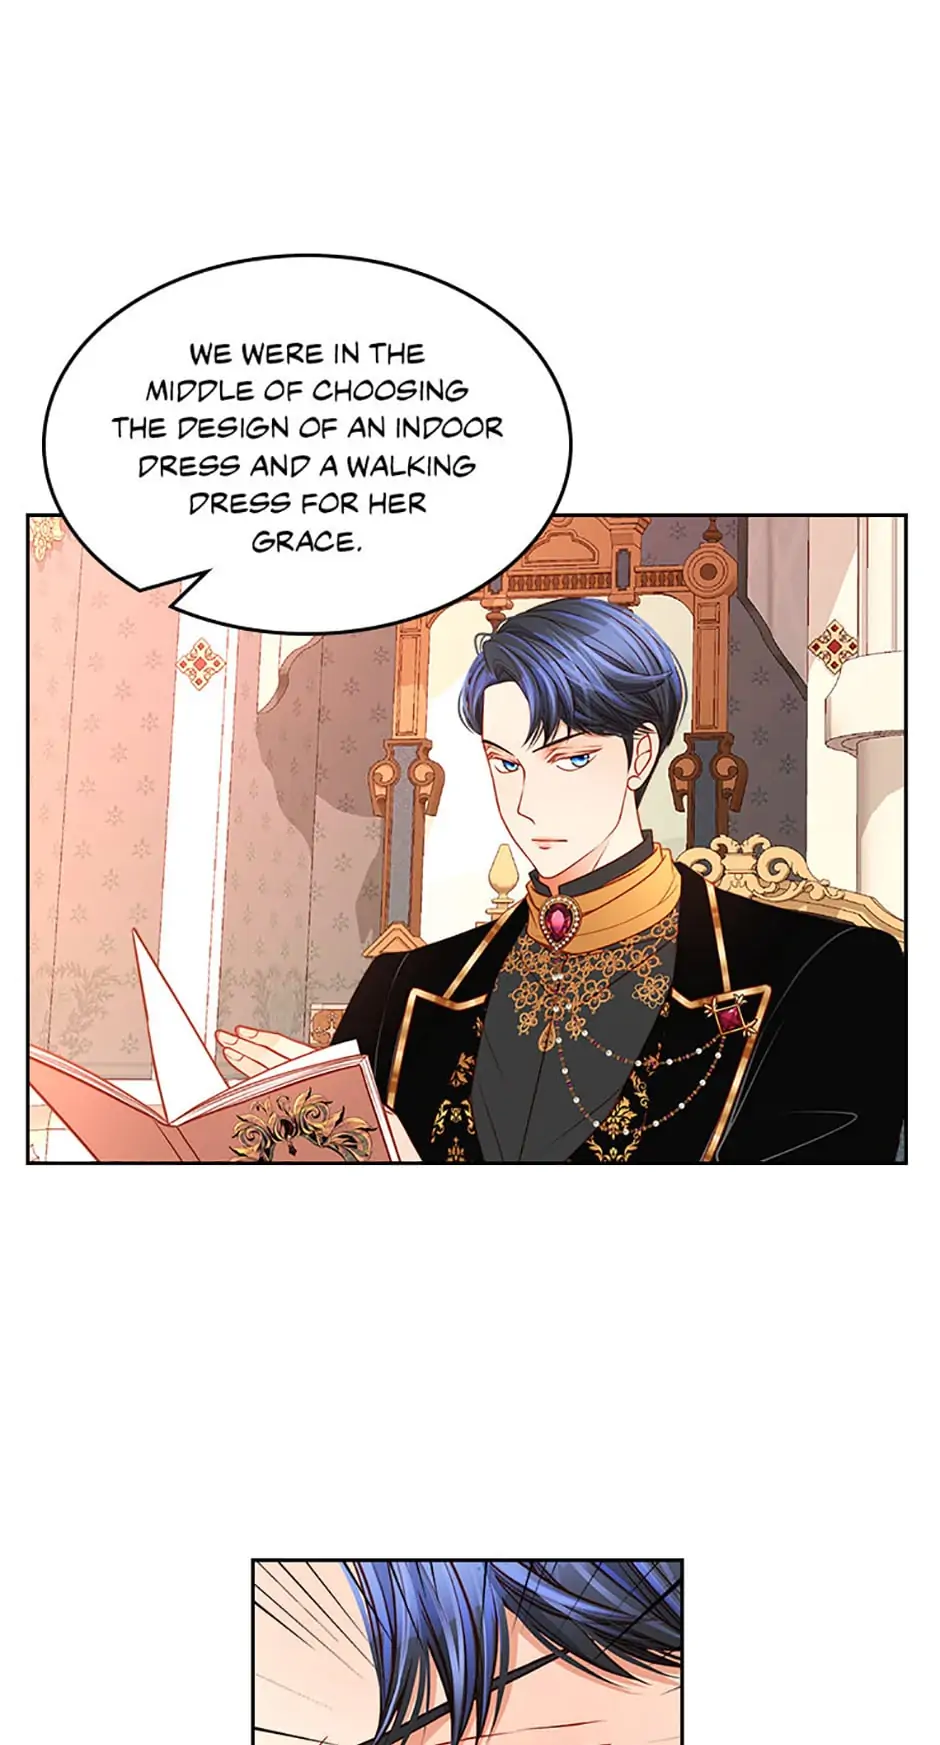 The Duchess’s Secret Dressing Room chapter 30